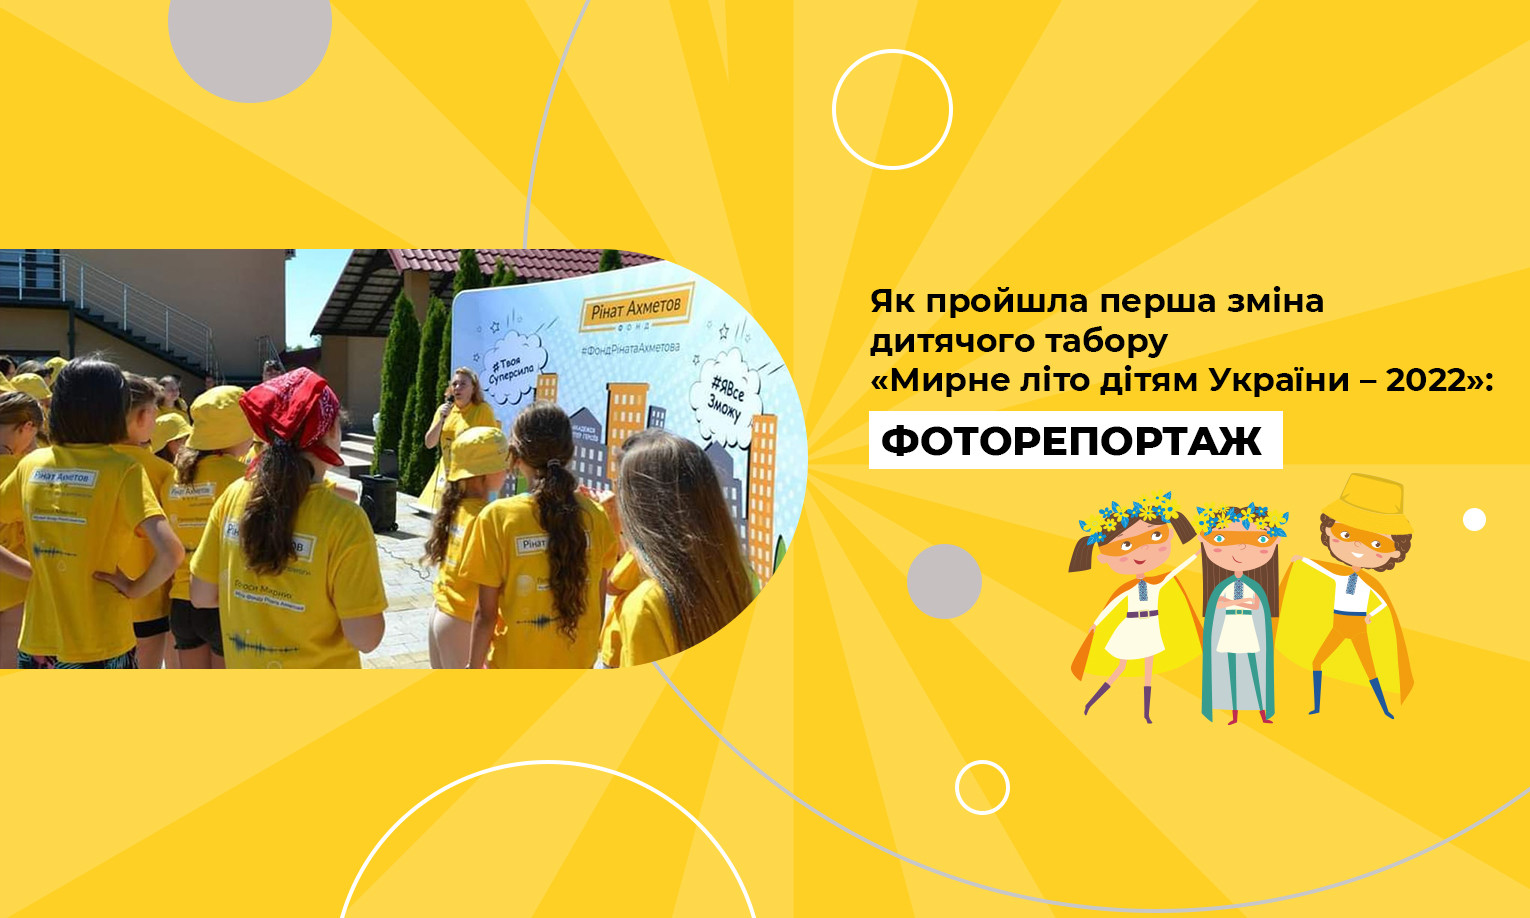 Як пройшла перша зміна дитячого табору «Мирне літо дітям України – 2022»: фоторепортаж